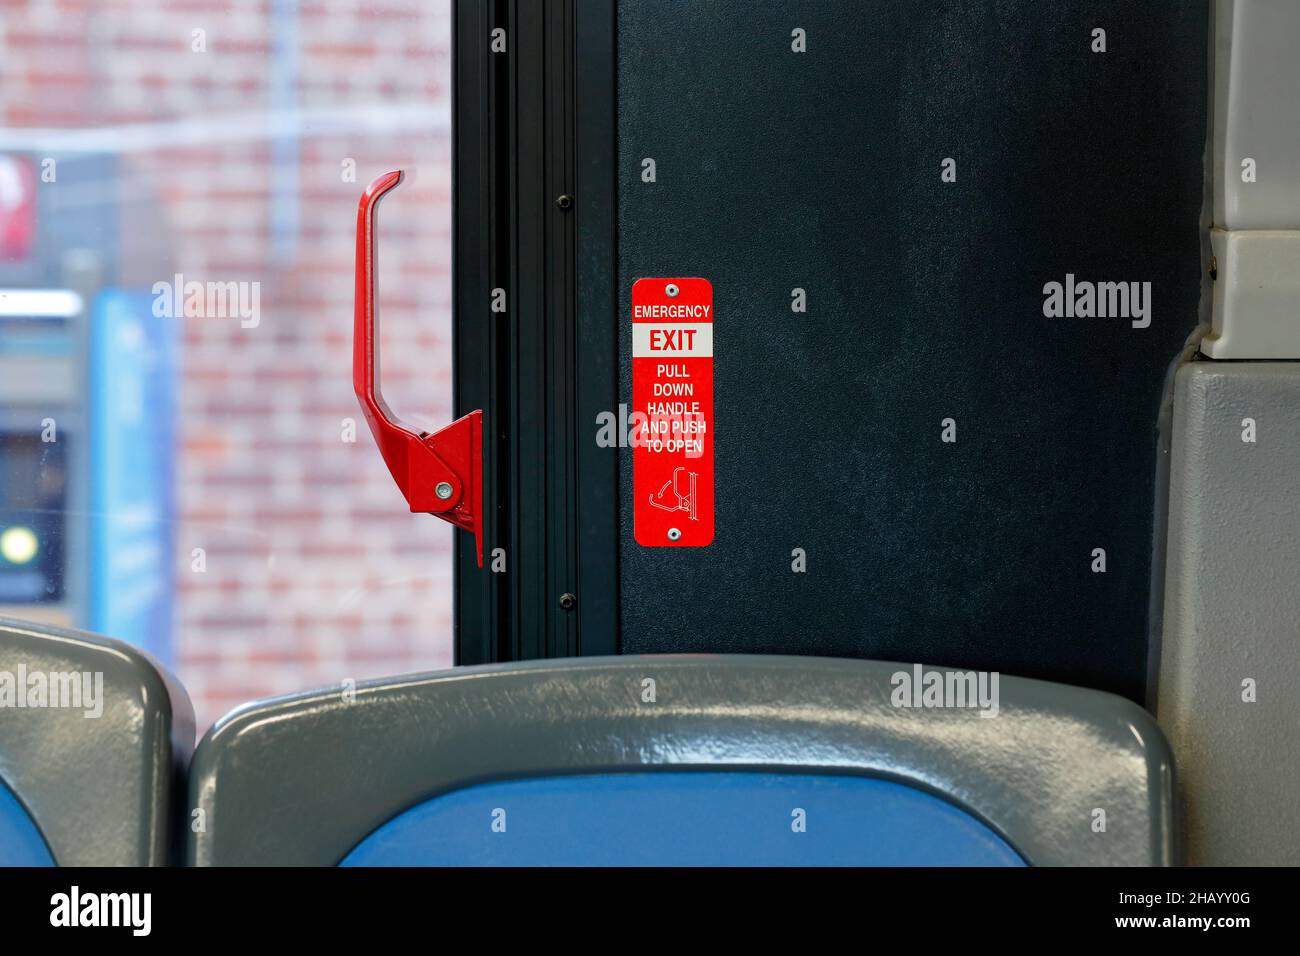 Une poignée de déverrouillage d'urgence rouge sur un bus; elle ouvre une fenêtre pour servir de sortie de secours. Banque D'Images